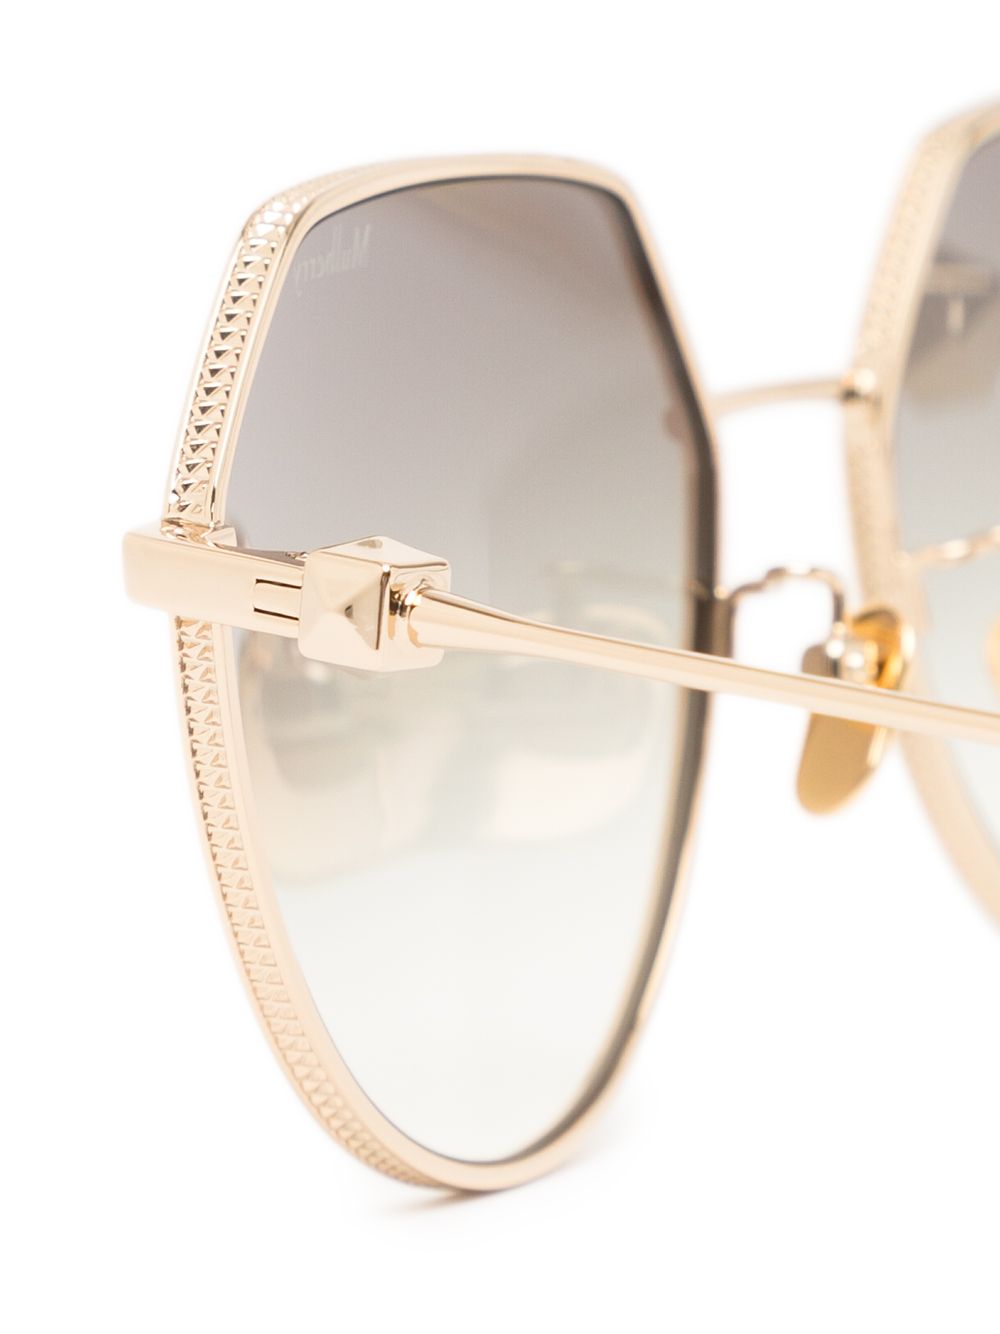 фото Mulberry солнцезащитные очки jamie в металлической оправе